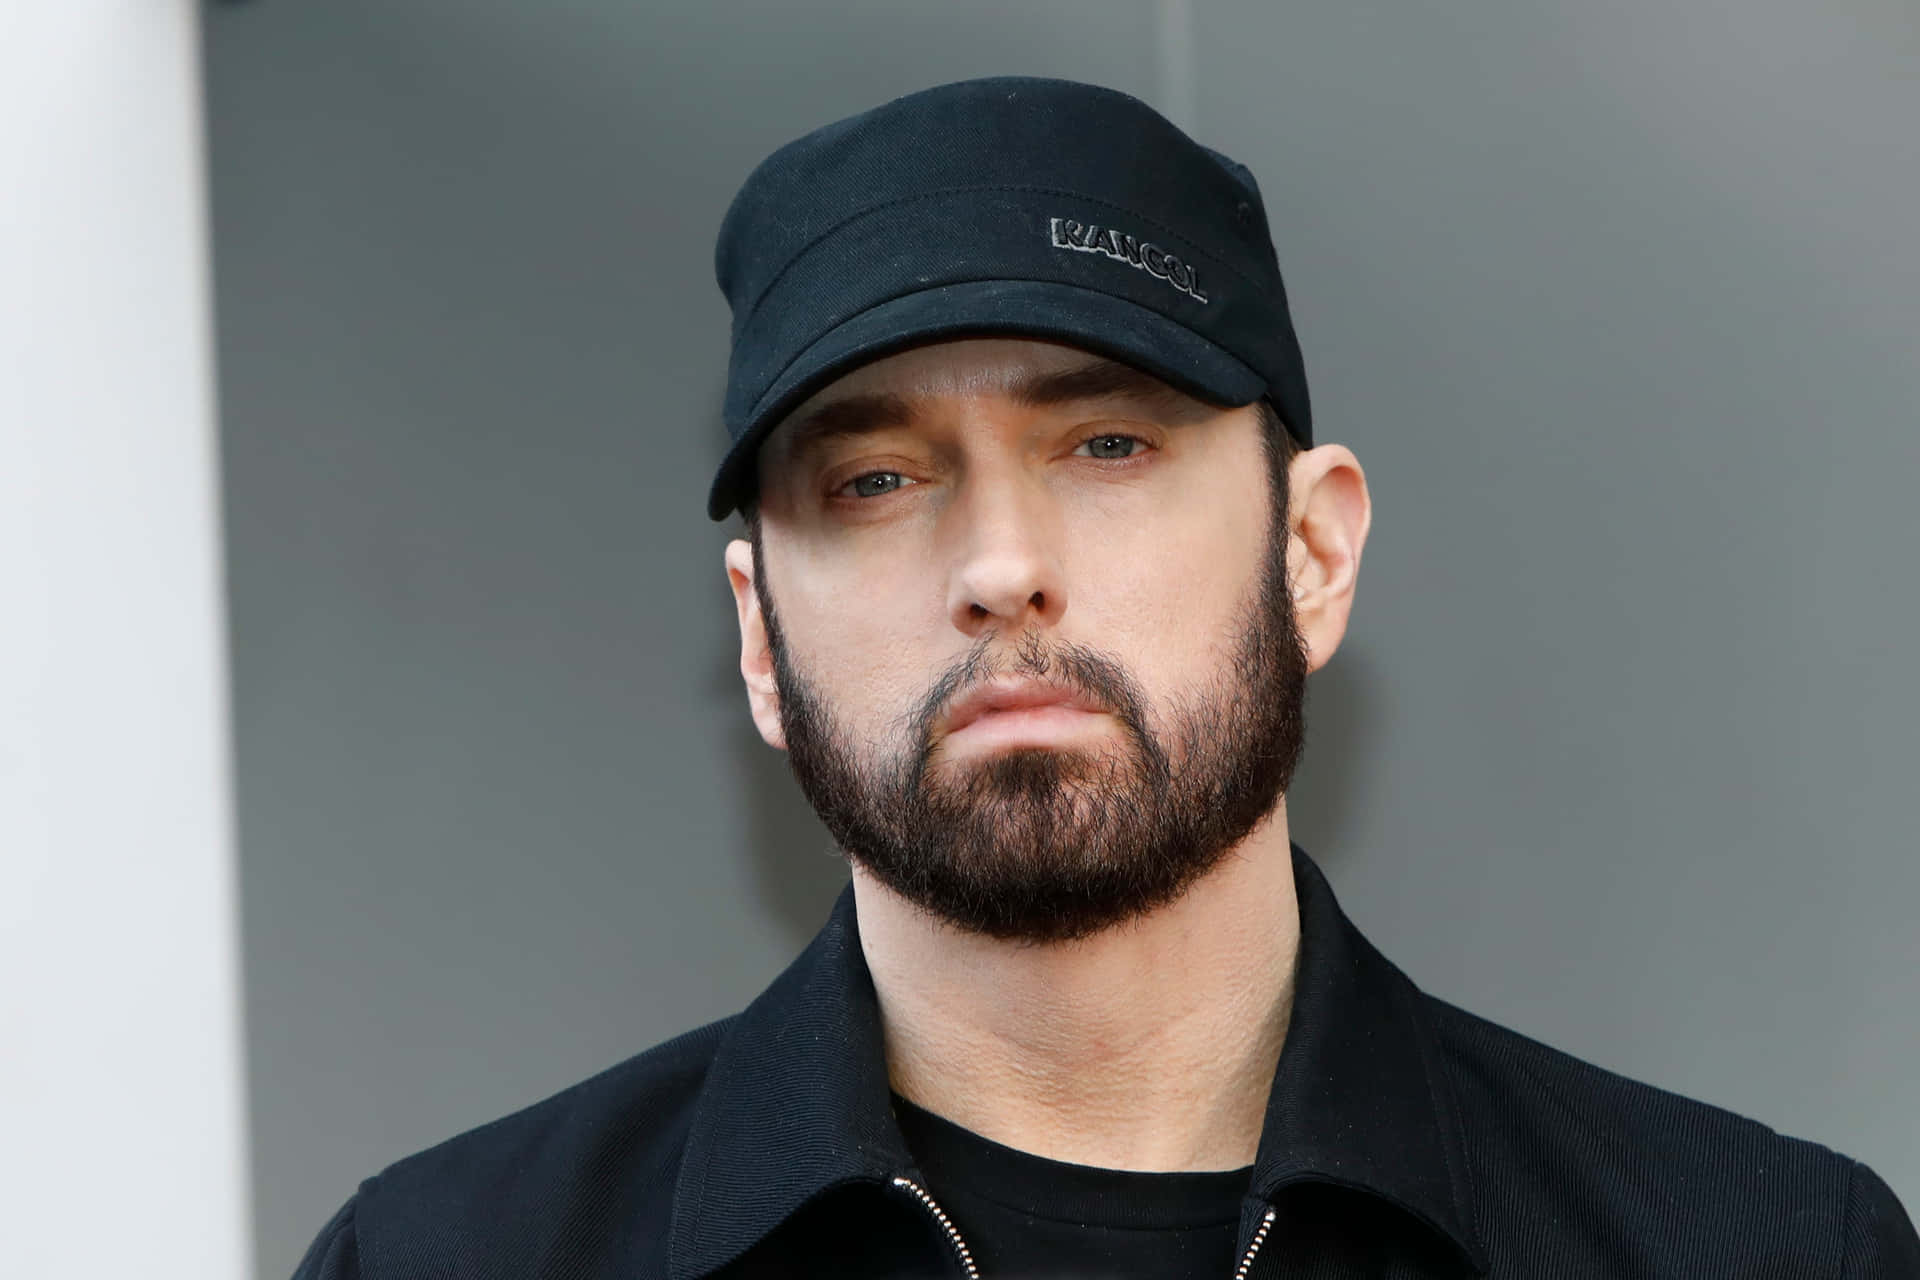 Eminemche Si Esibisce Sul Palco Con Il Microfono In Mano